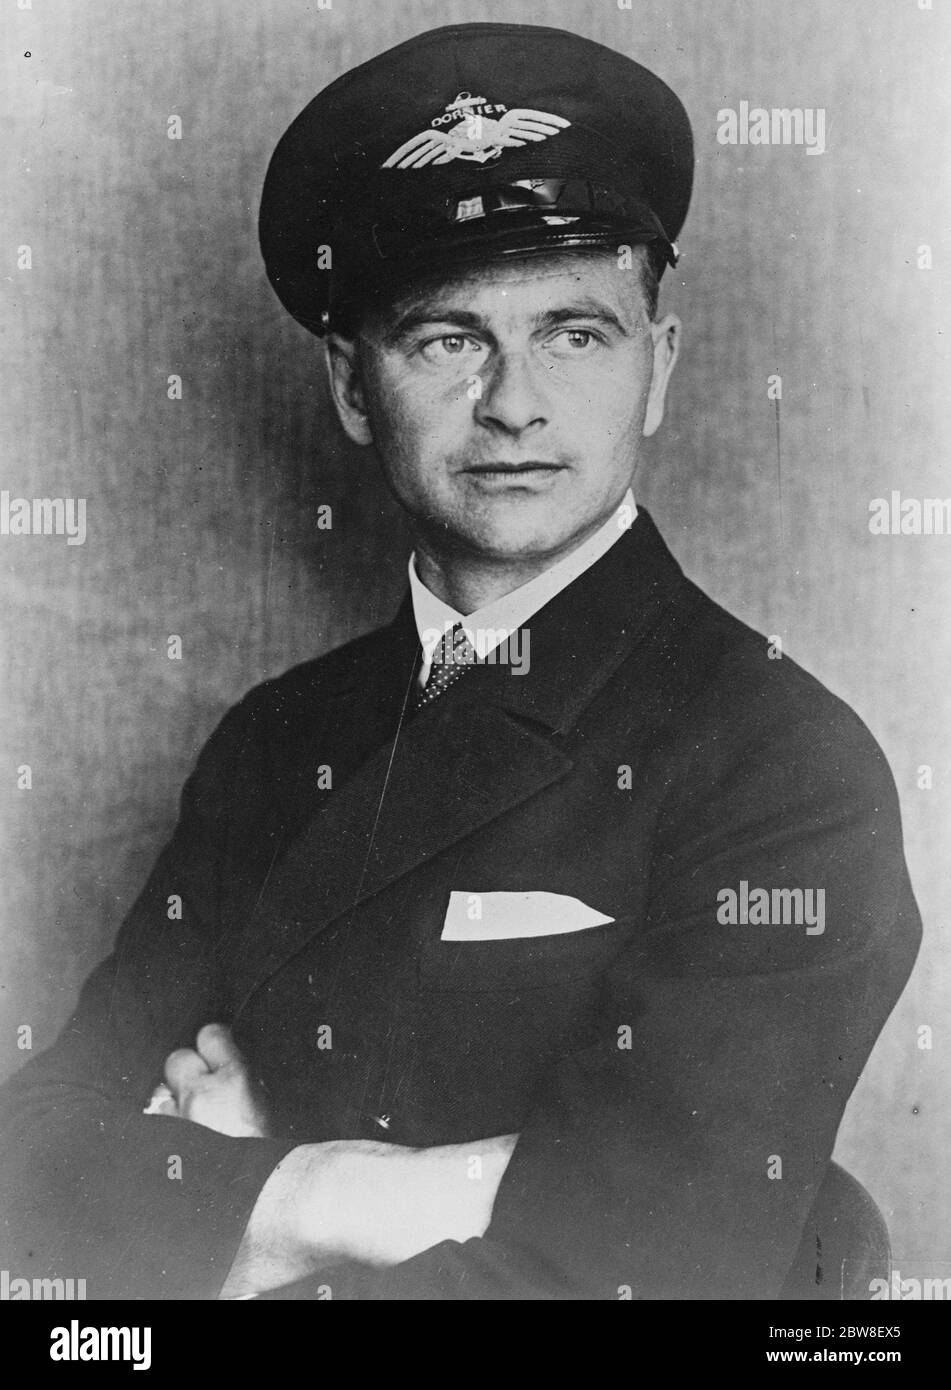 The Officers of the giant Dornier do X . Flight Captain Horst Merz . 25 October 1930 Stock Photo